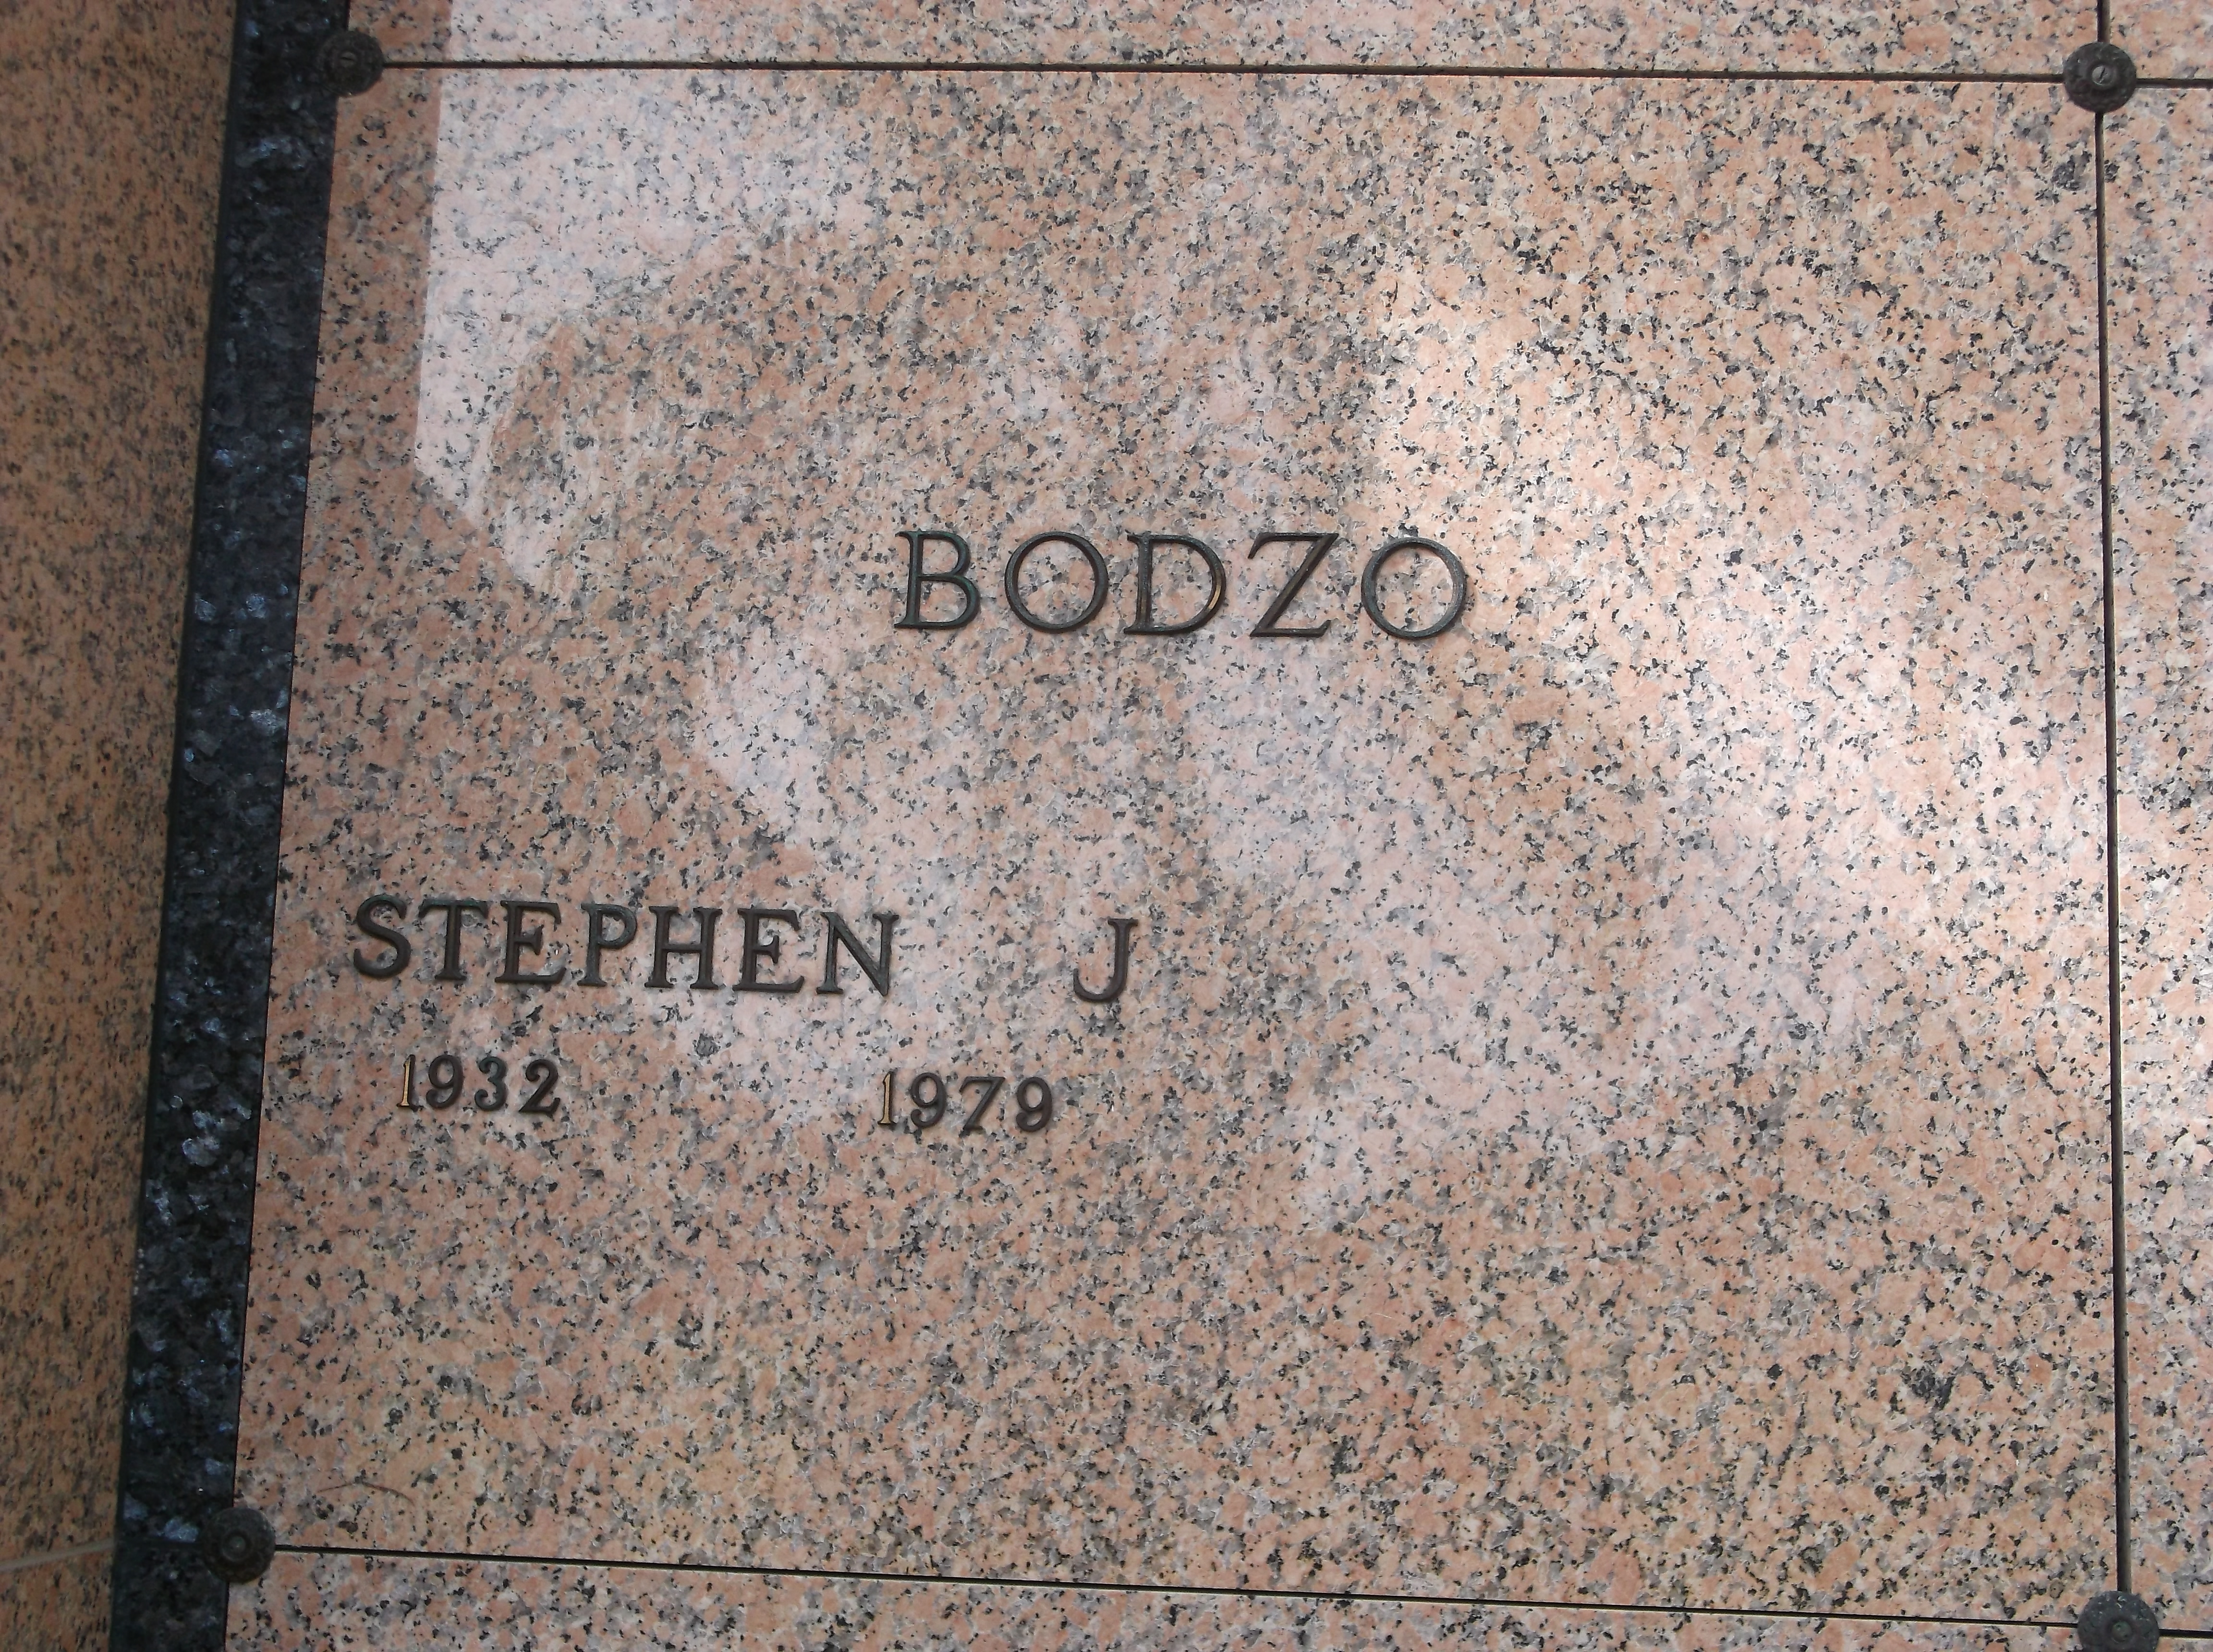 Stephen J Bodzo